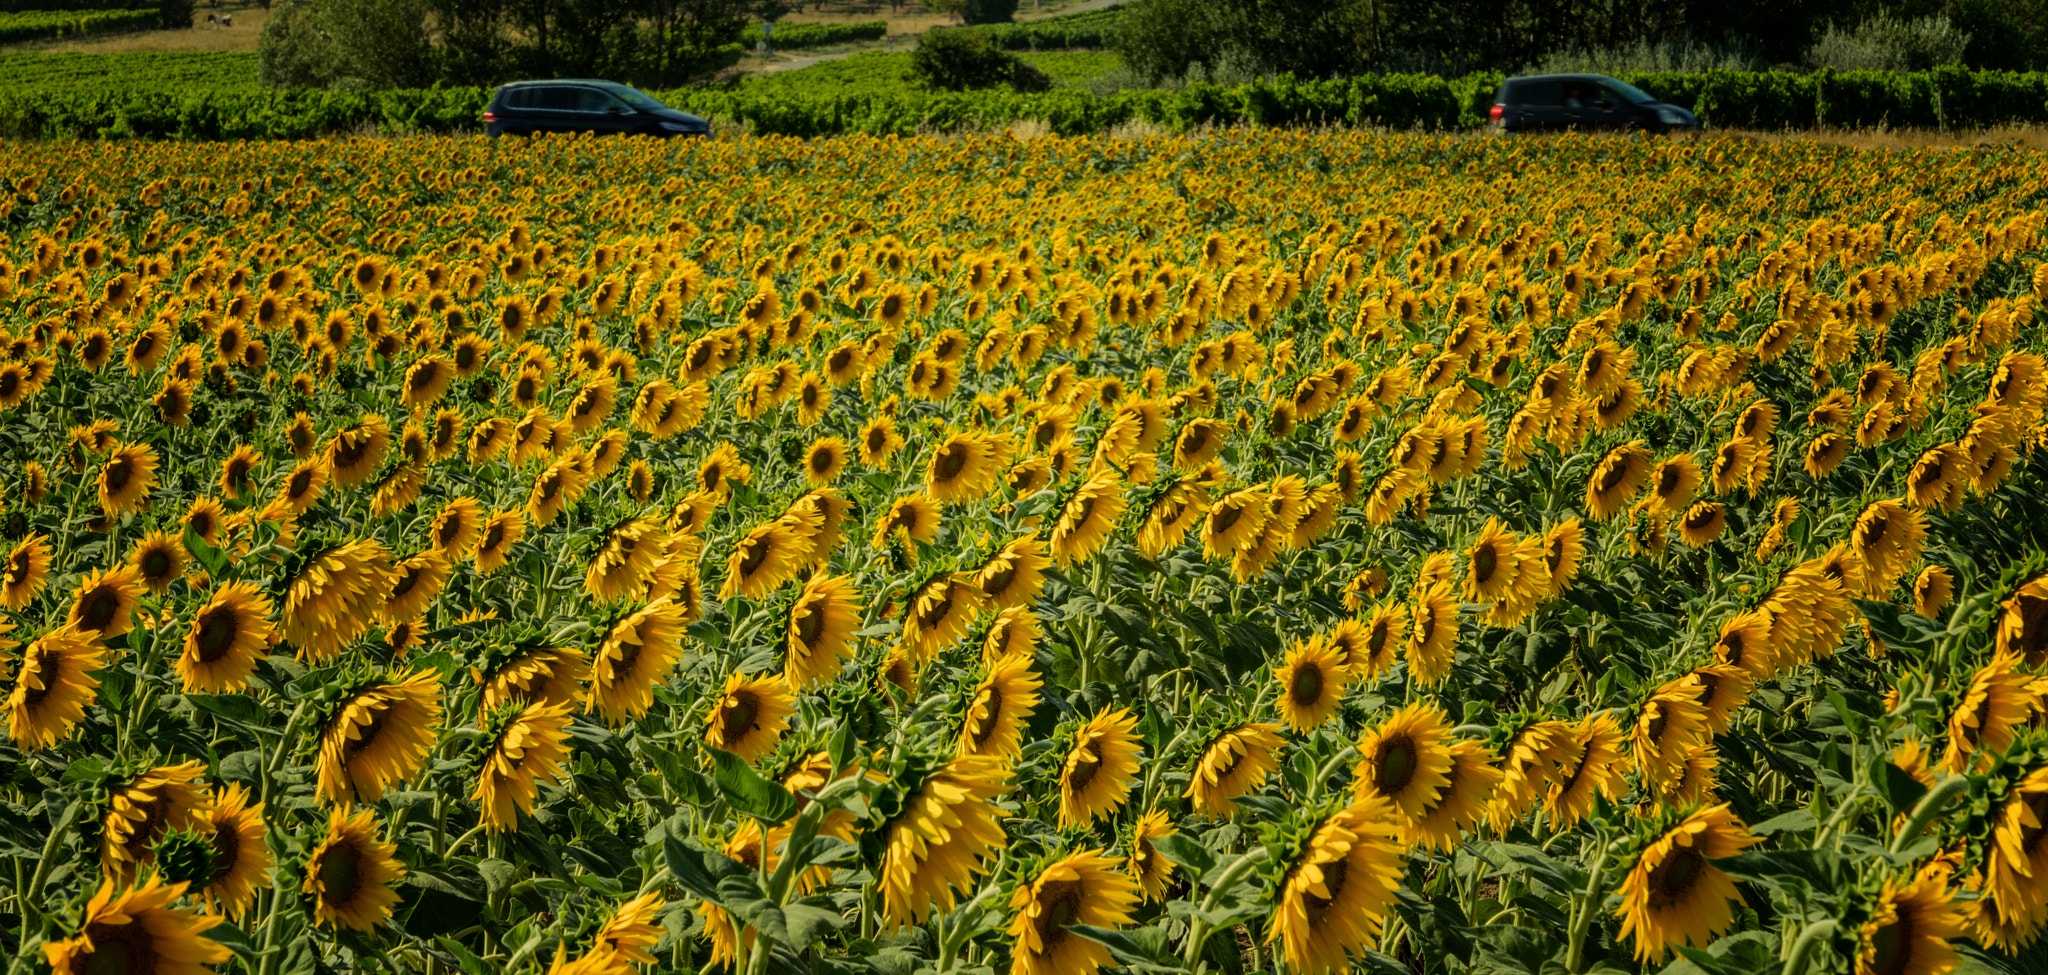 Nikon D5 + Nikon AF-S Nikkor 28-300mm F3.5-5.6G ED VR sample photo. Sunflower photography